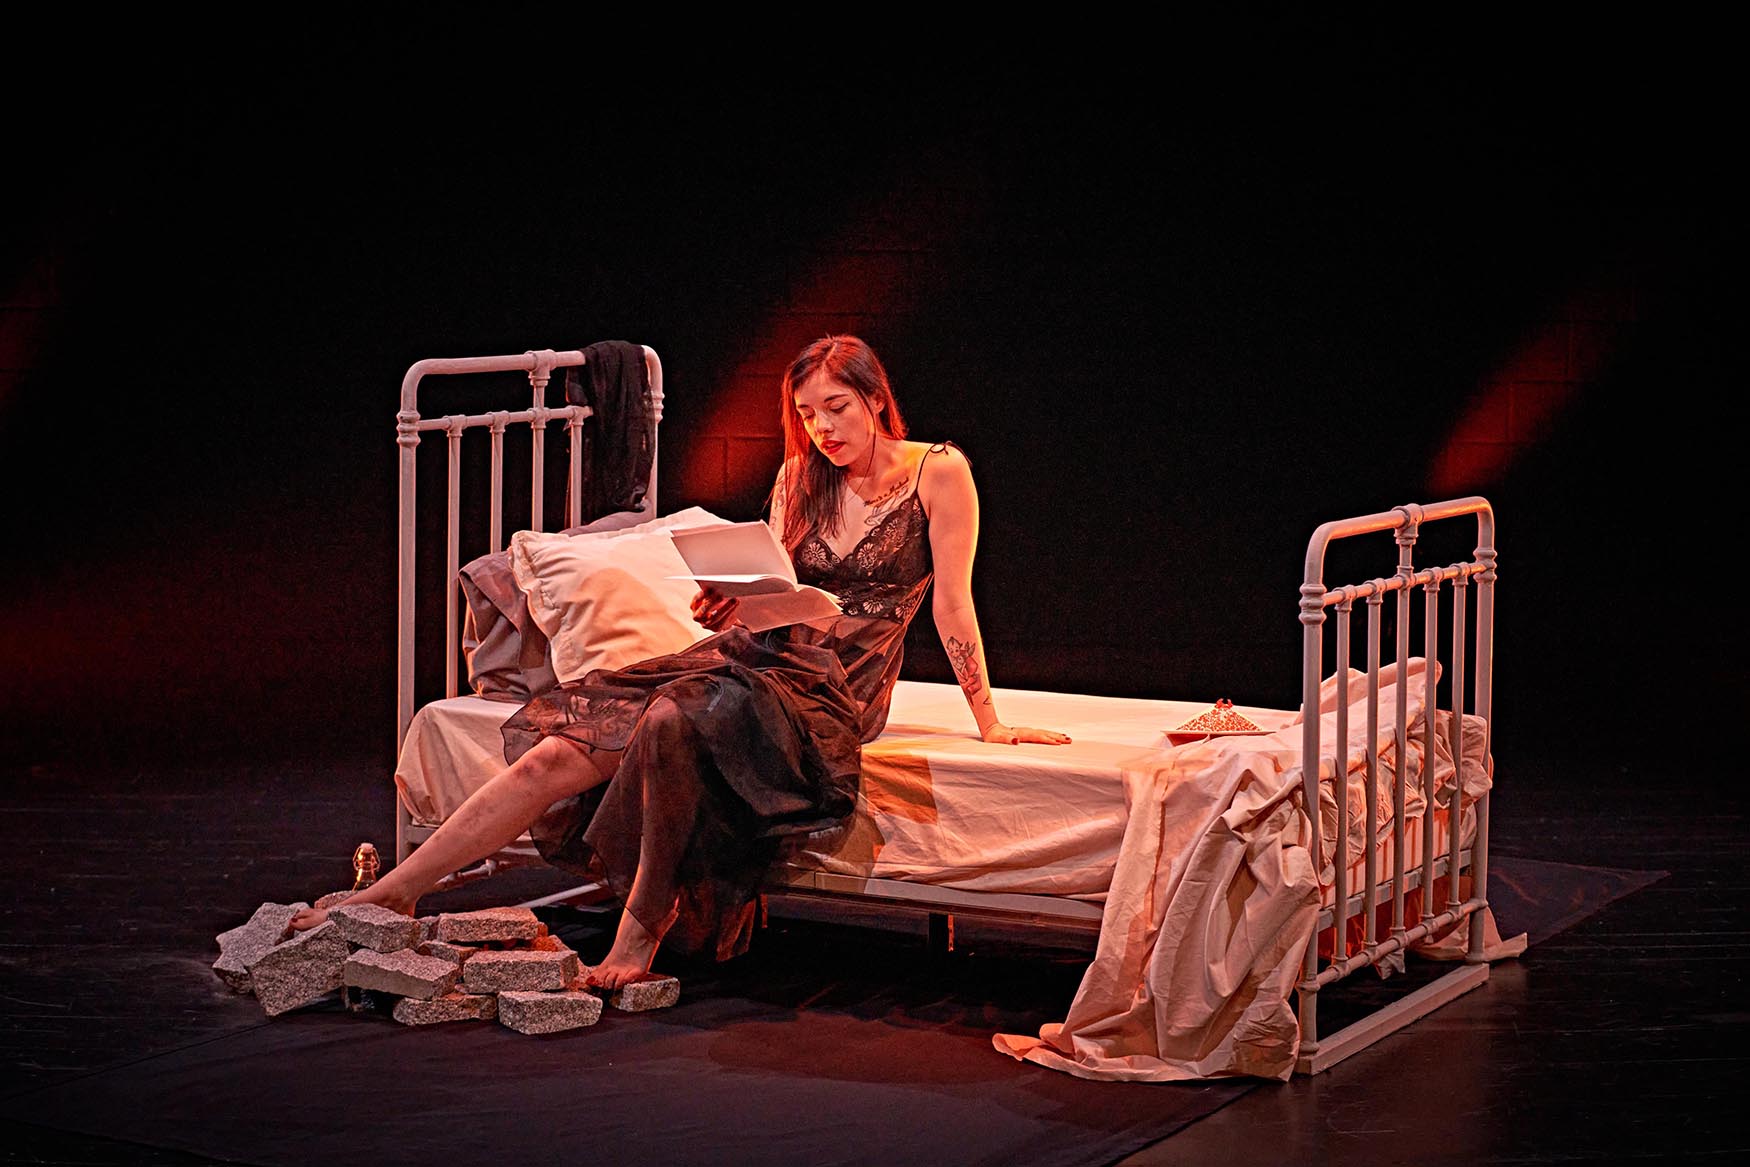 Escena de la obra protagonizada por Luna MIguel